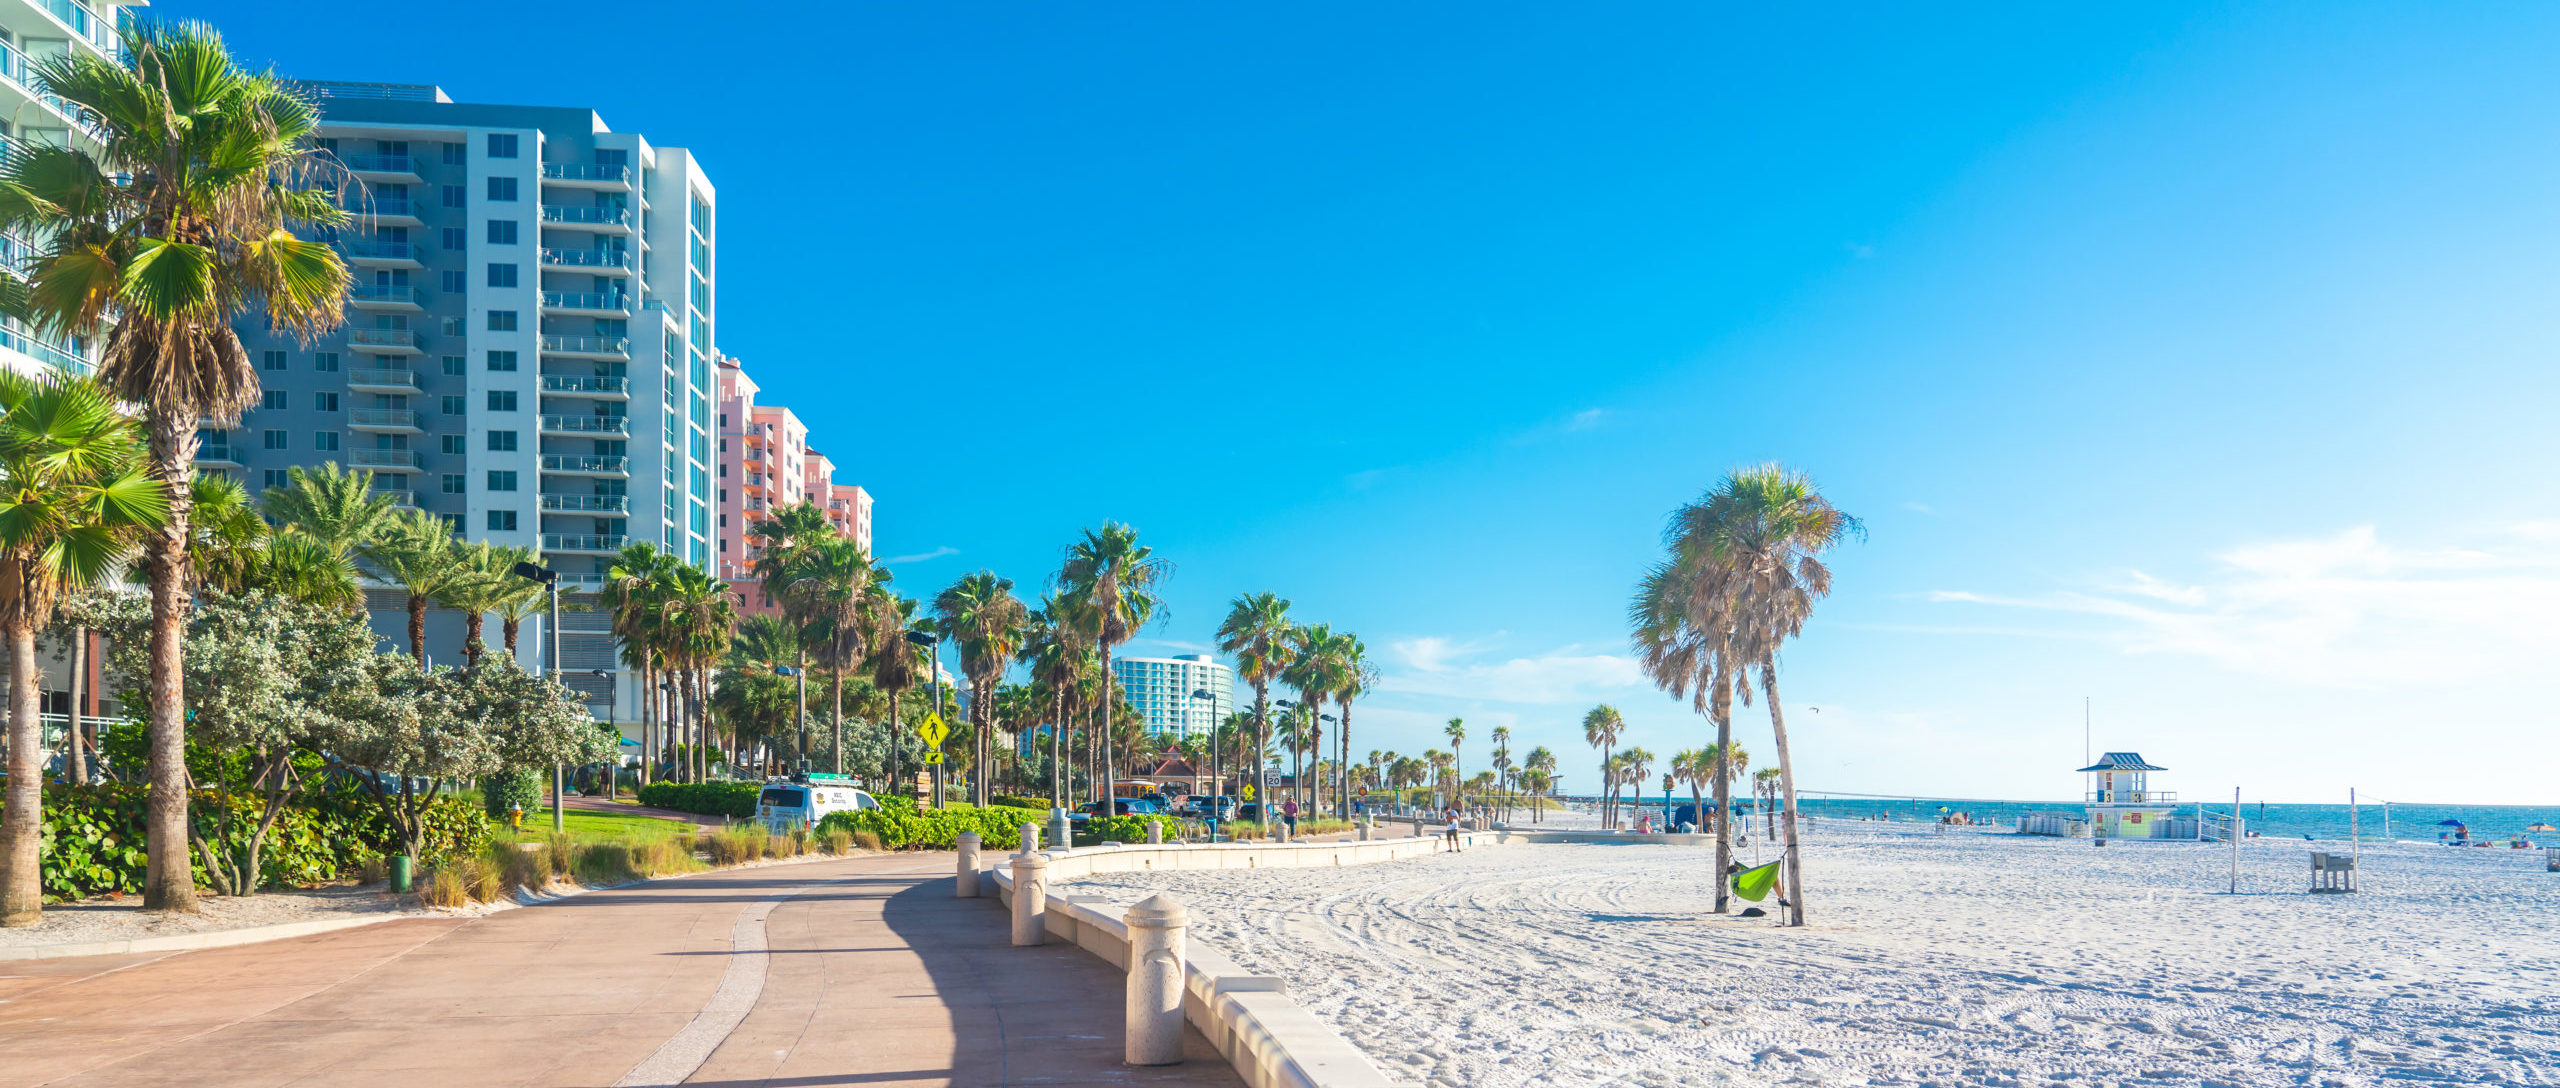 10 Best Beach Cities in America, Ranked  SmarterTravel